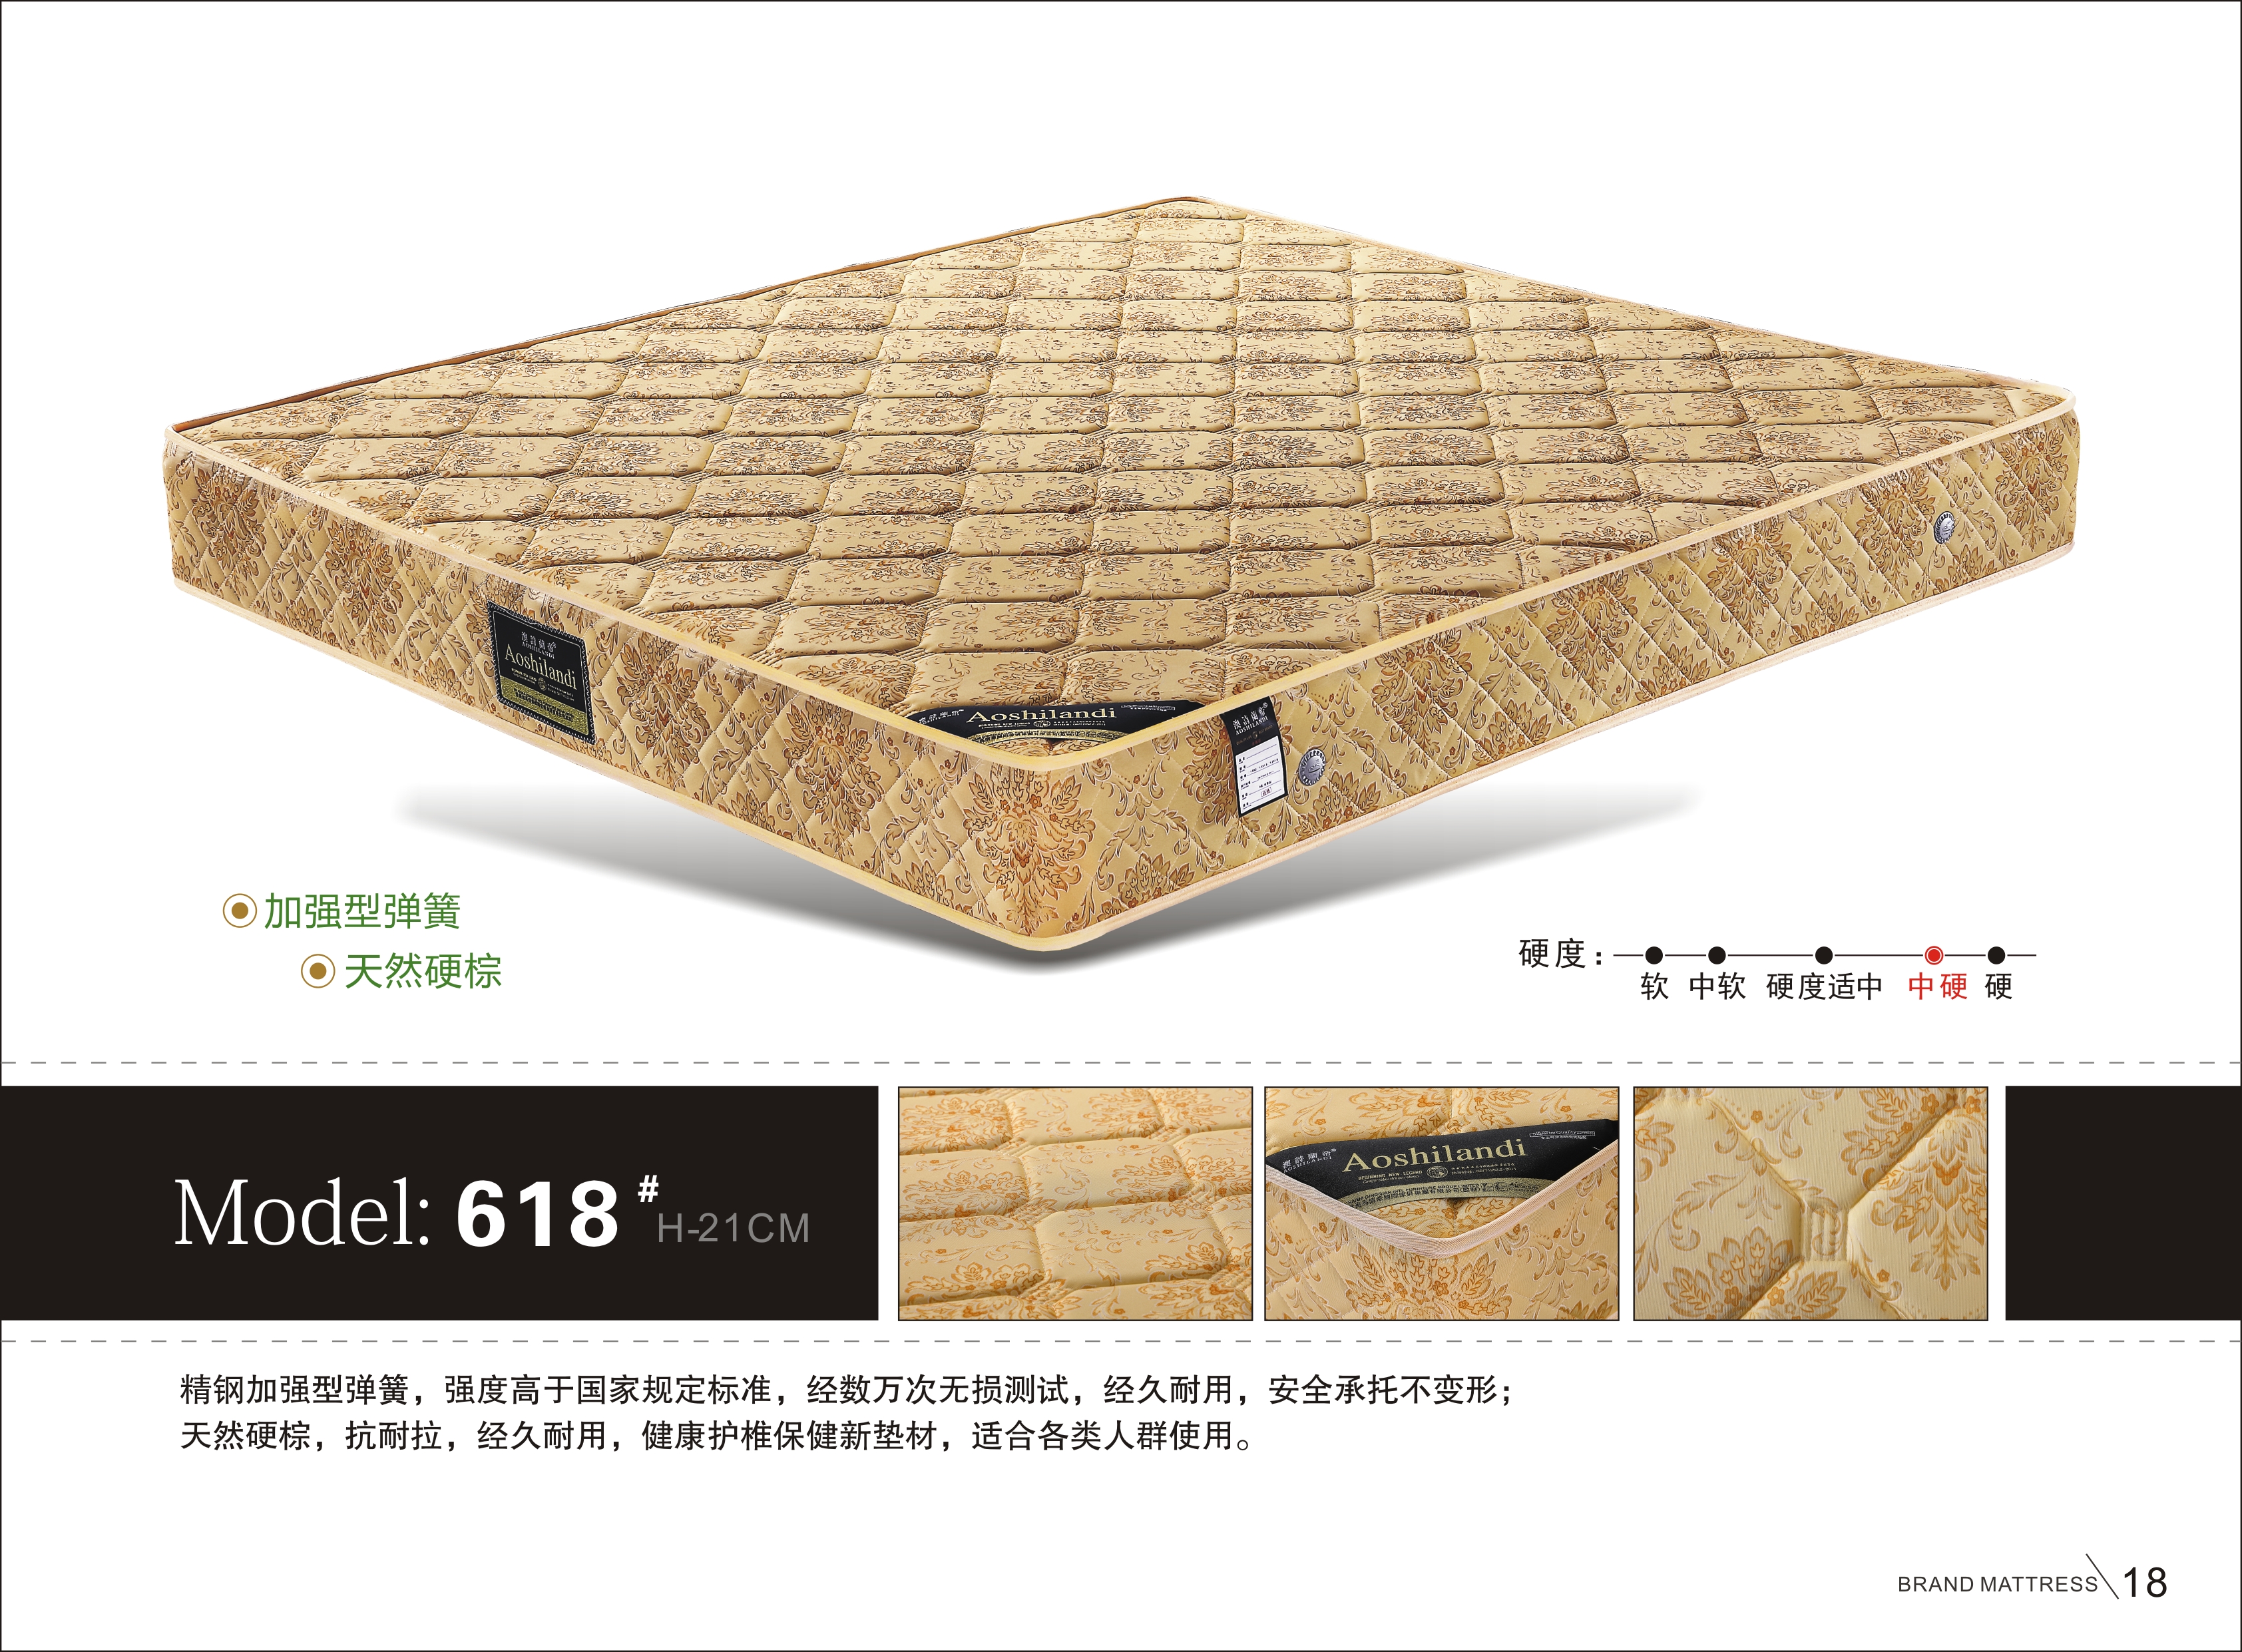 广州海马情牵床垫生产厂家_海马情牵床垫供应商_价格